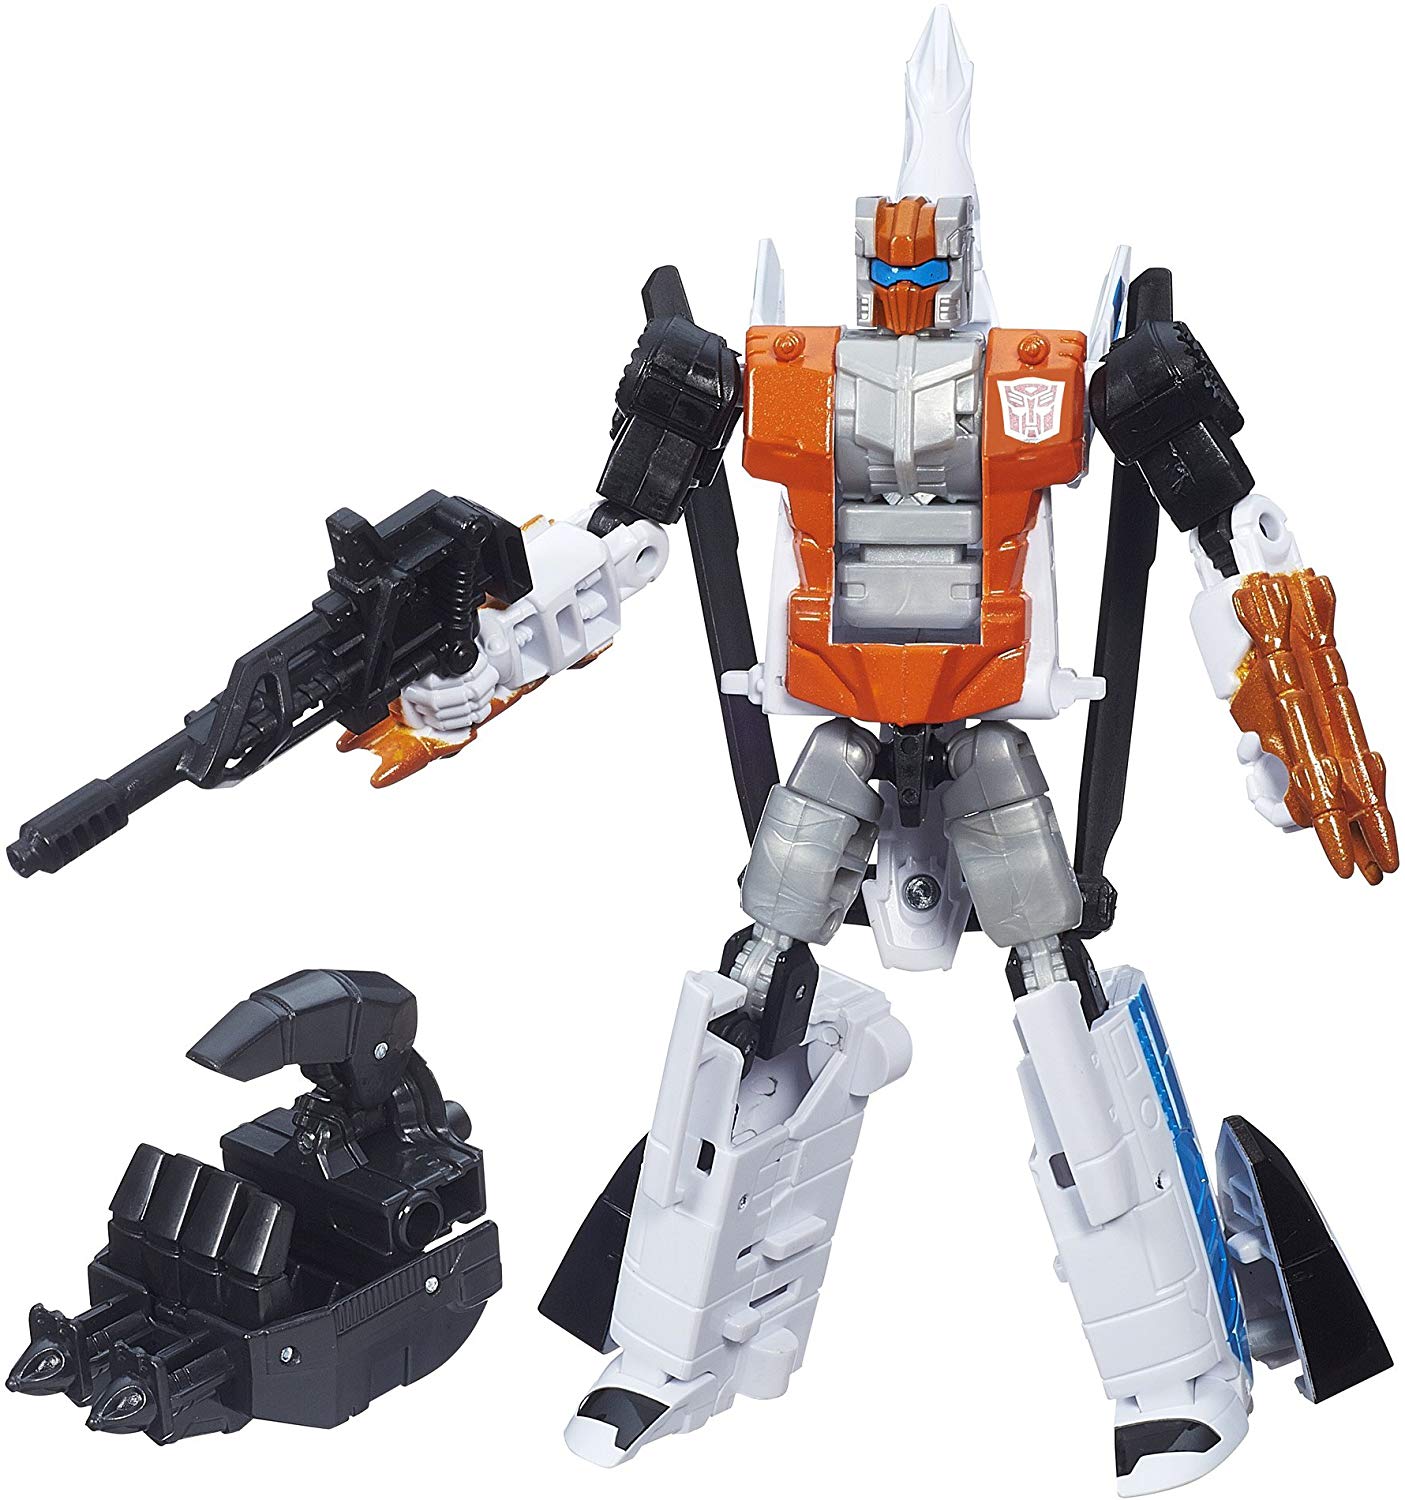 Transformers Generations Combiner Wars Deluxe Class Alpha Bravo Action Figure 2